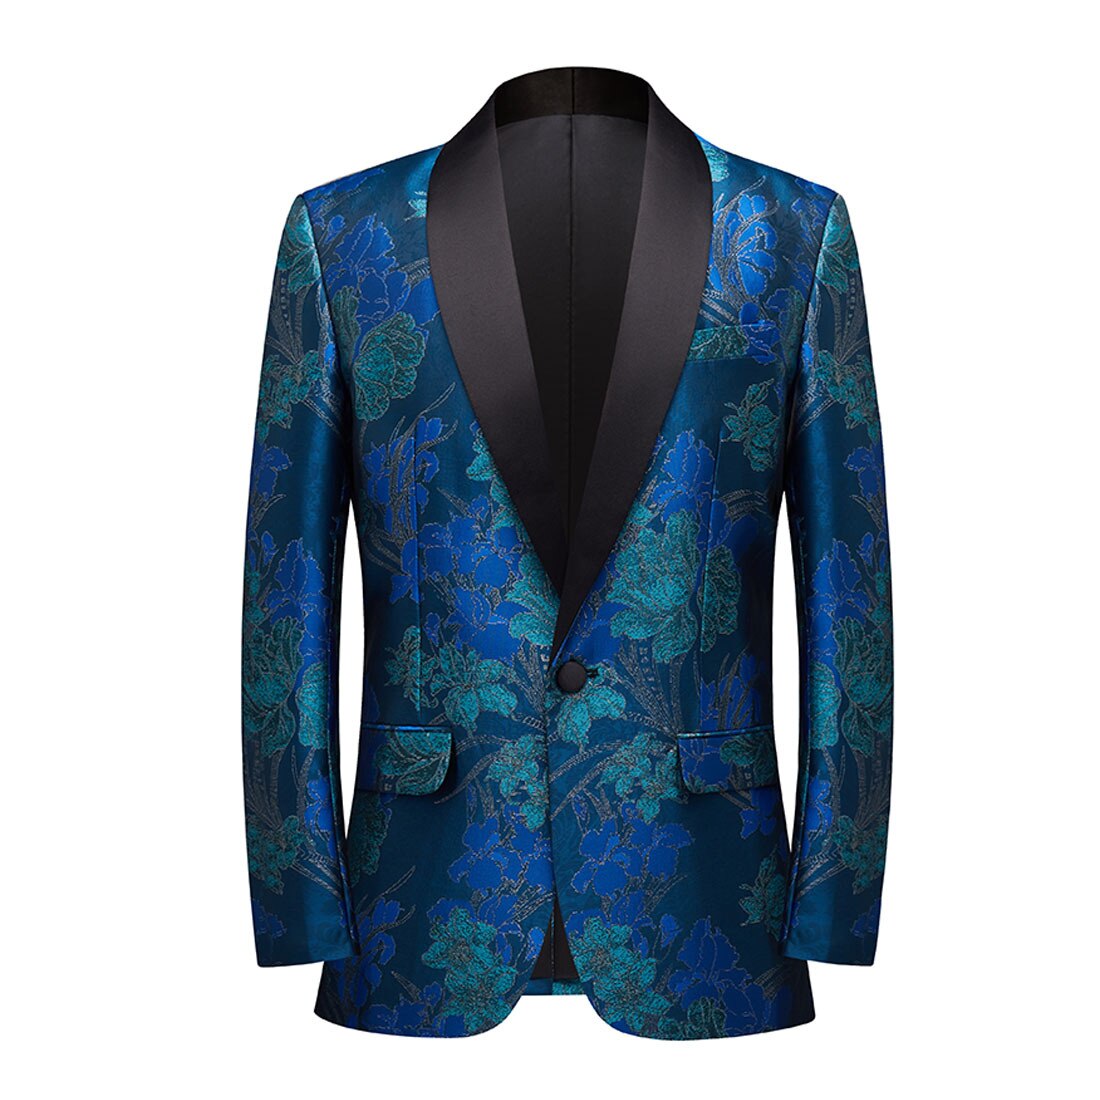 남자 결혼식 연회 자카드 블레이저 블루 정장 재킷, 싱글 버튼 목도리 옷깃 저녁 파티 호스트 턱시도 정장 코트 의상